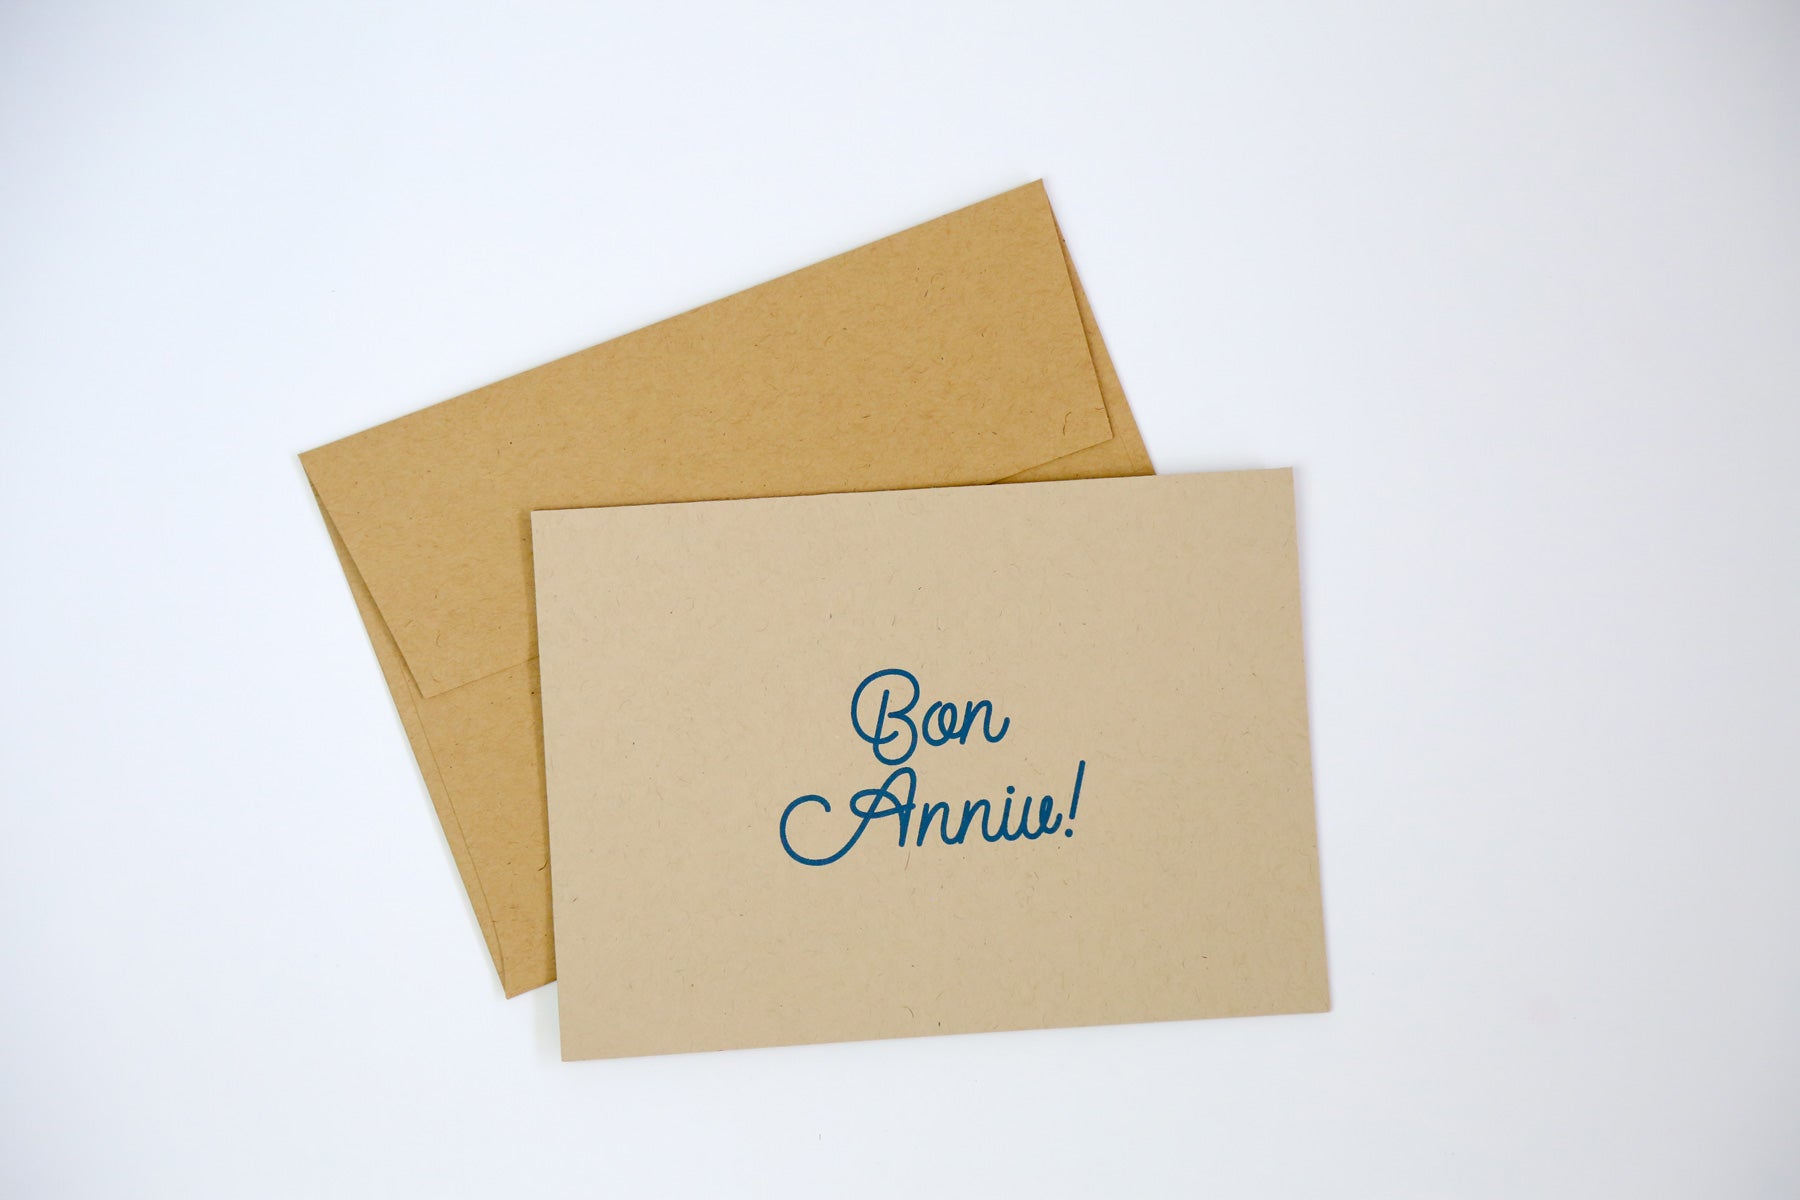 Bon Anniv! - Greeting Card